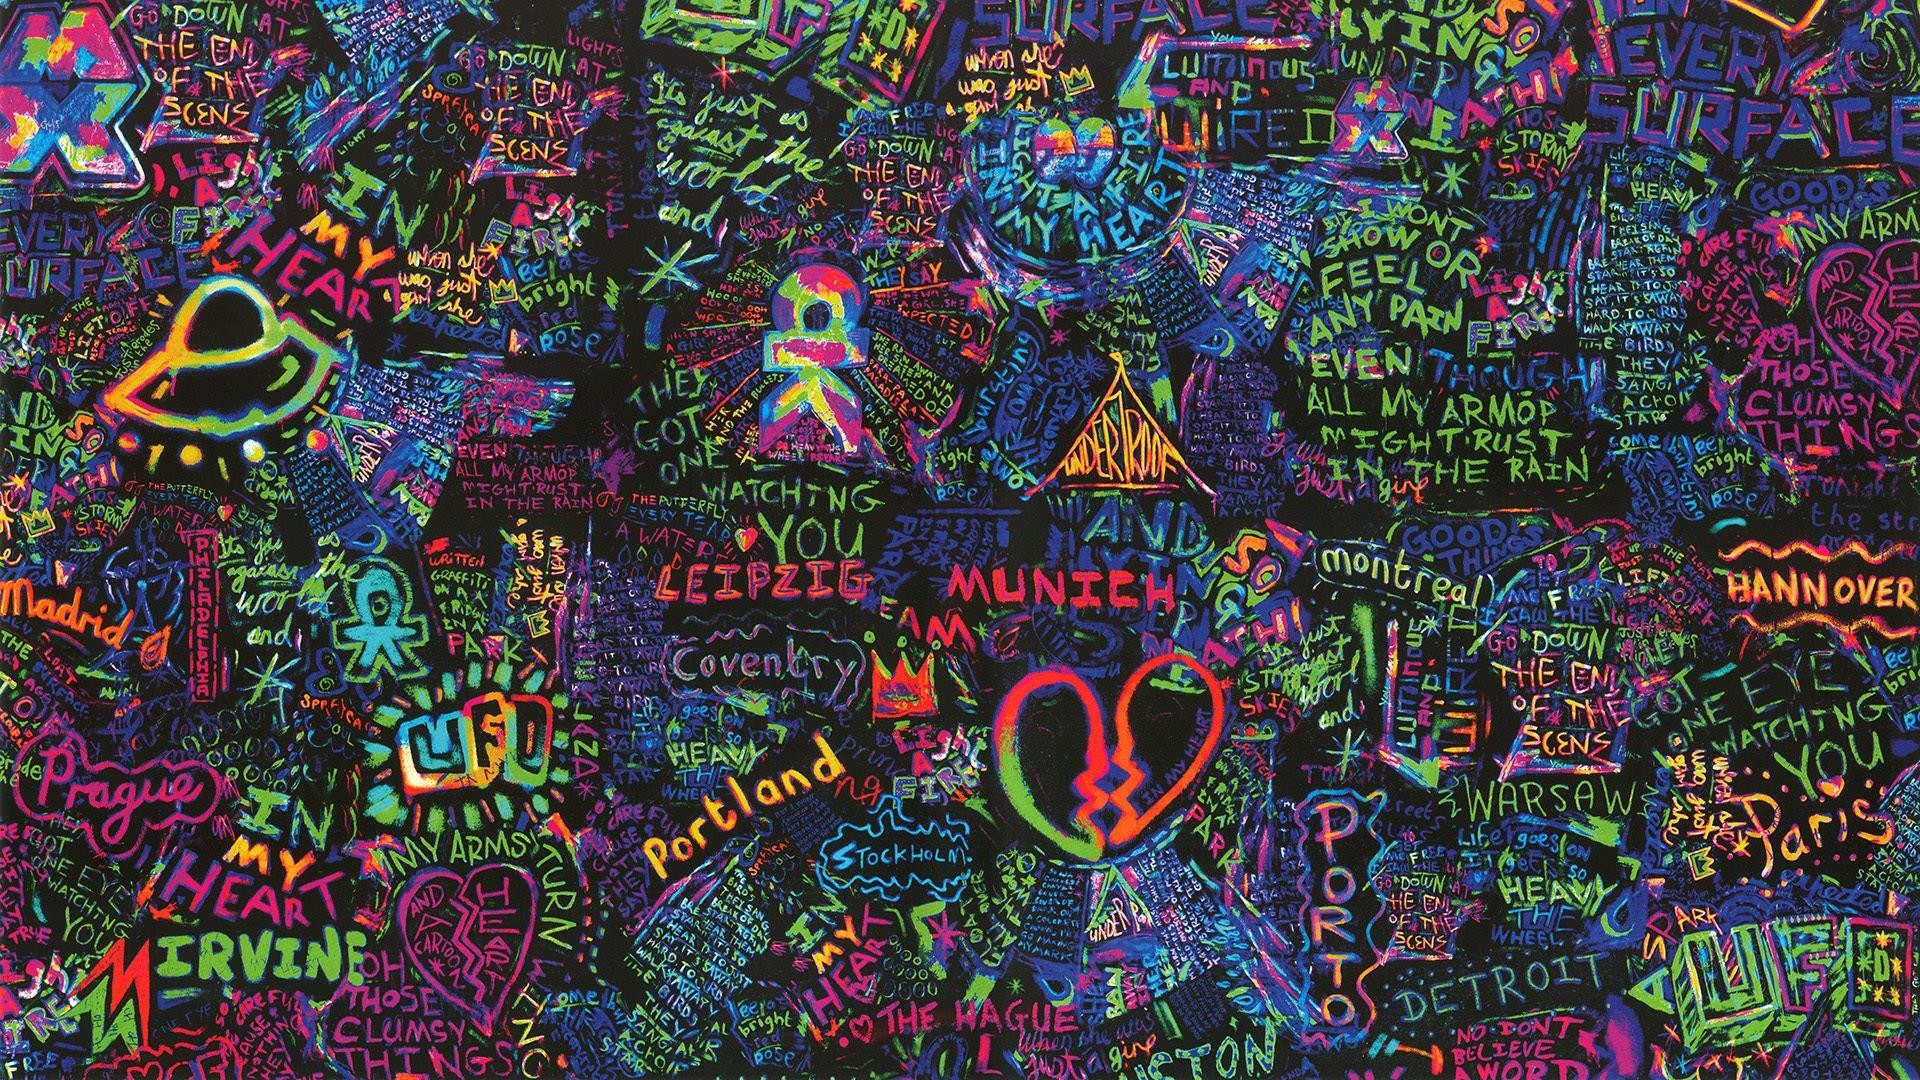 1920x1080 Coldplay Wallpaper For My Desktop - WallpaperSafari